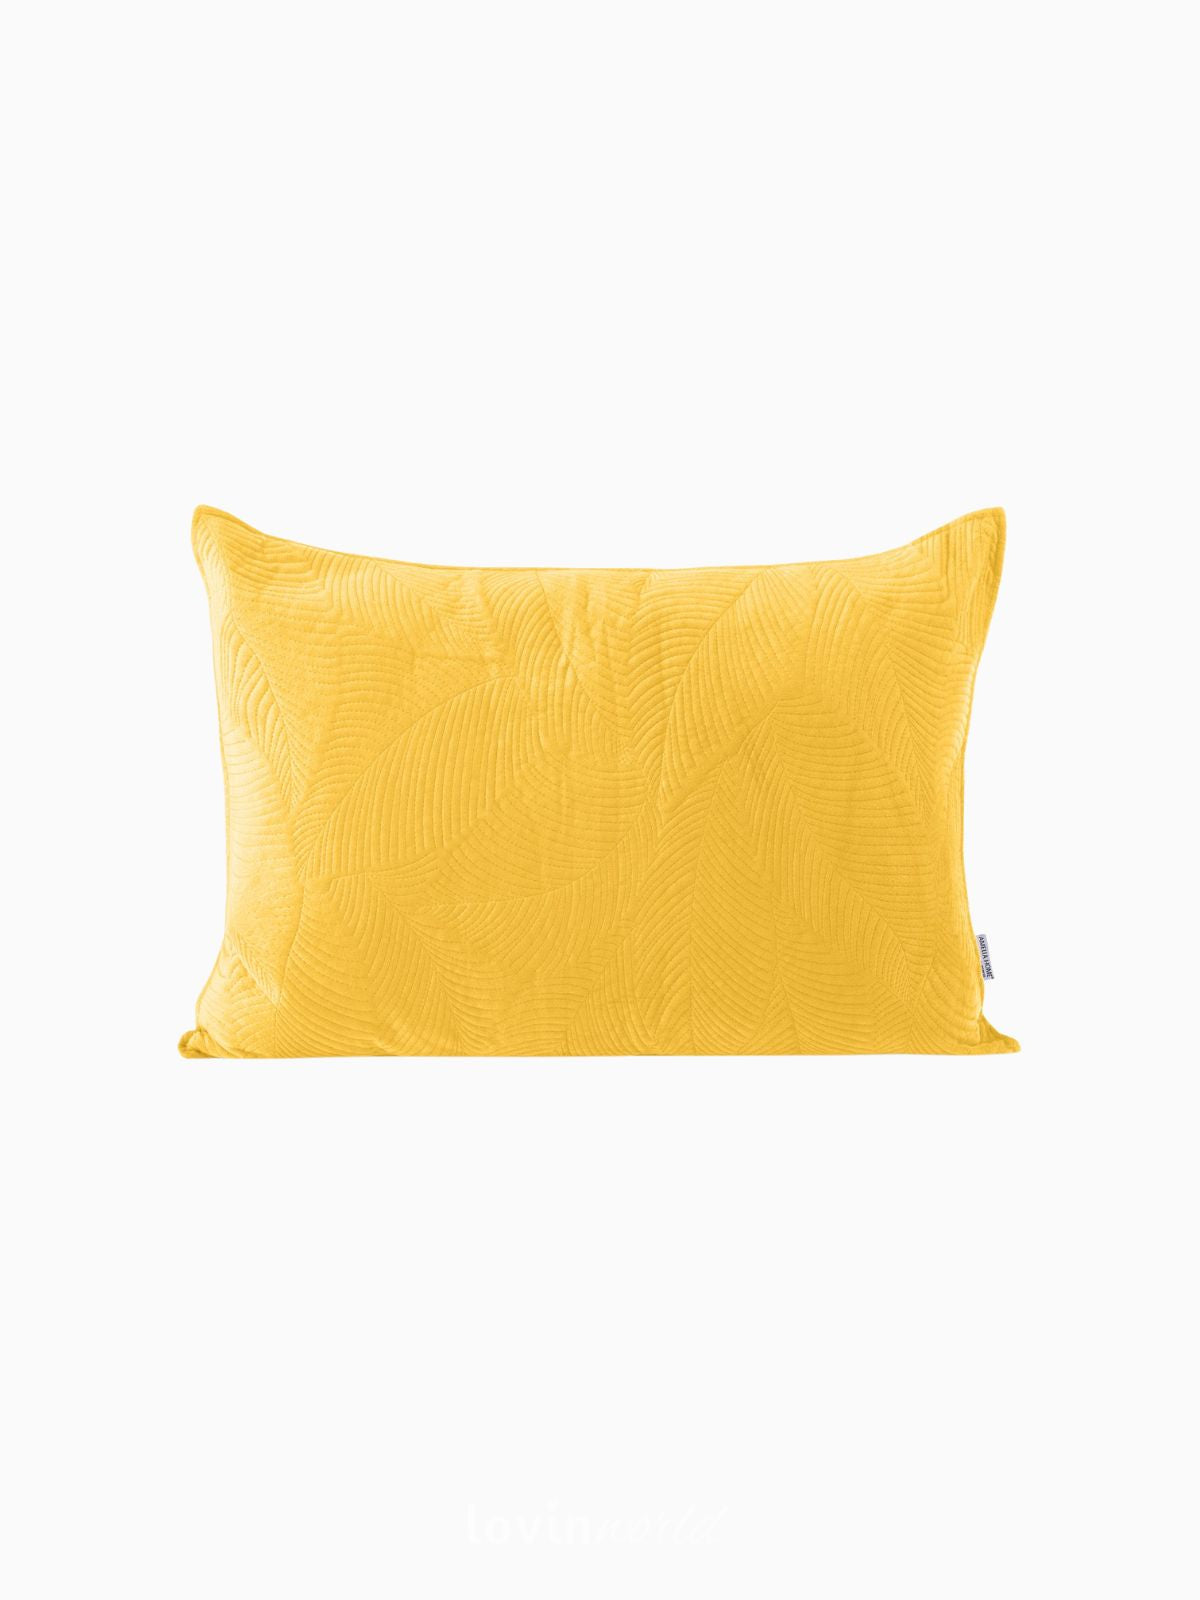 Cuscino decorativo in velluto Palsha, colore giallo 50x70 cm.-1